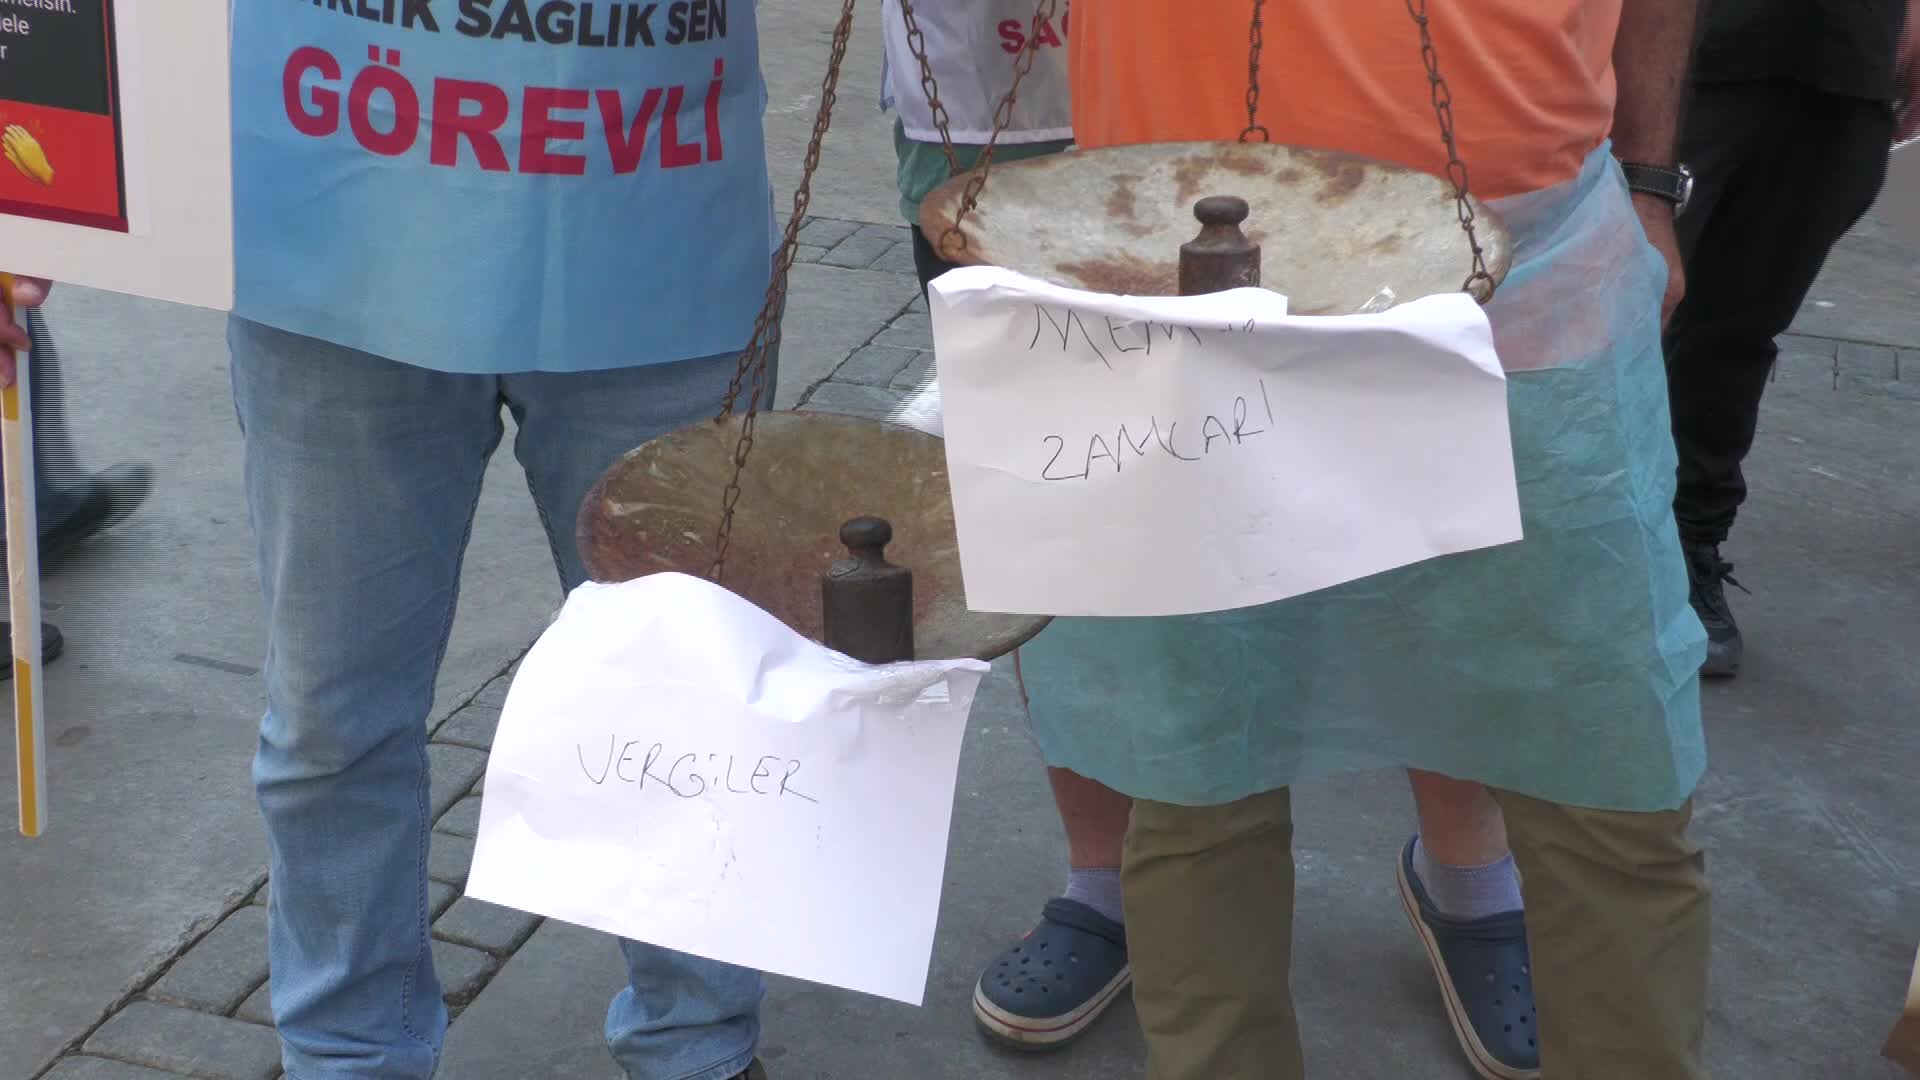 İzmir'de memurlar zamları protesto etti: Tezgah açıp patates, soğan sattılar